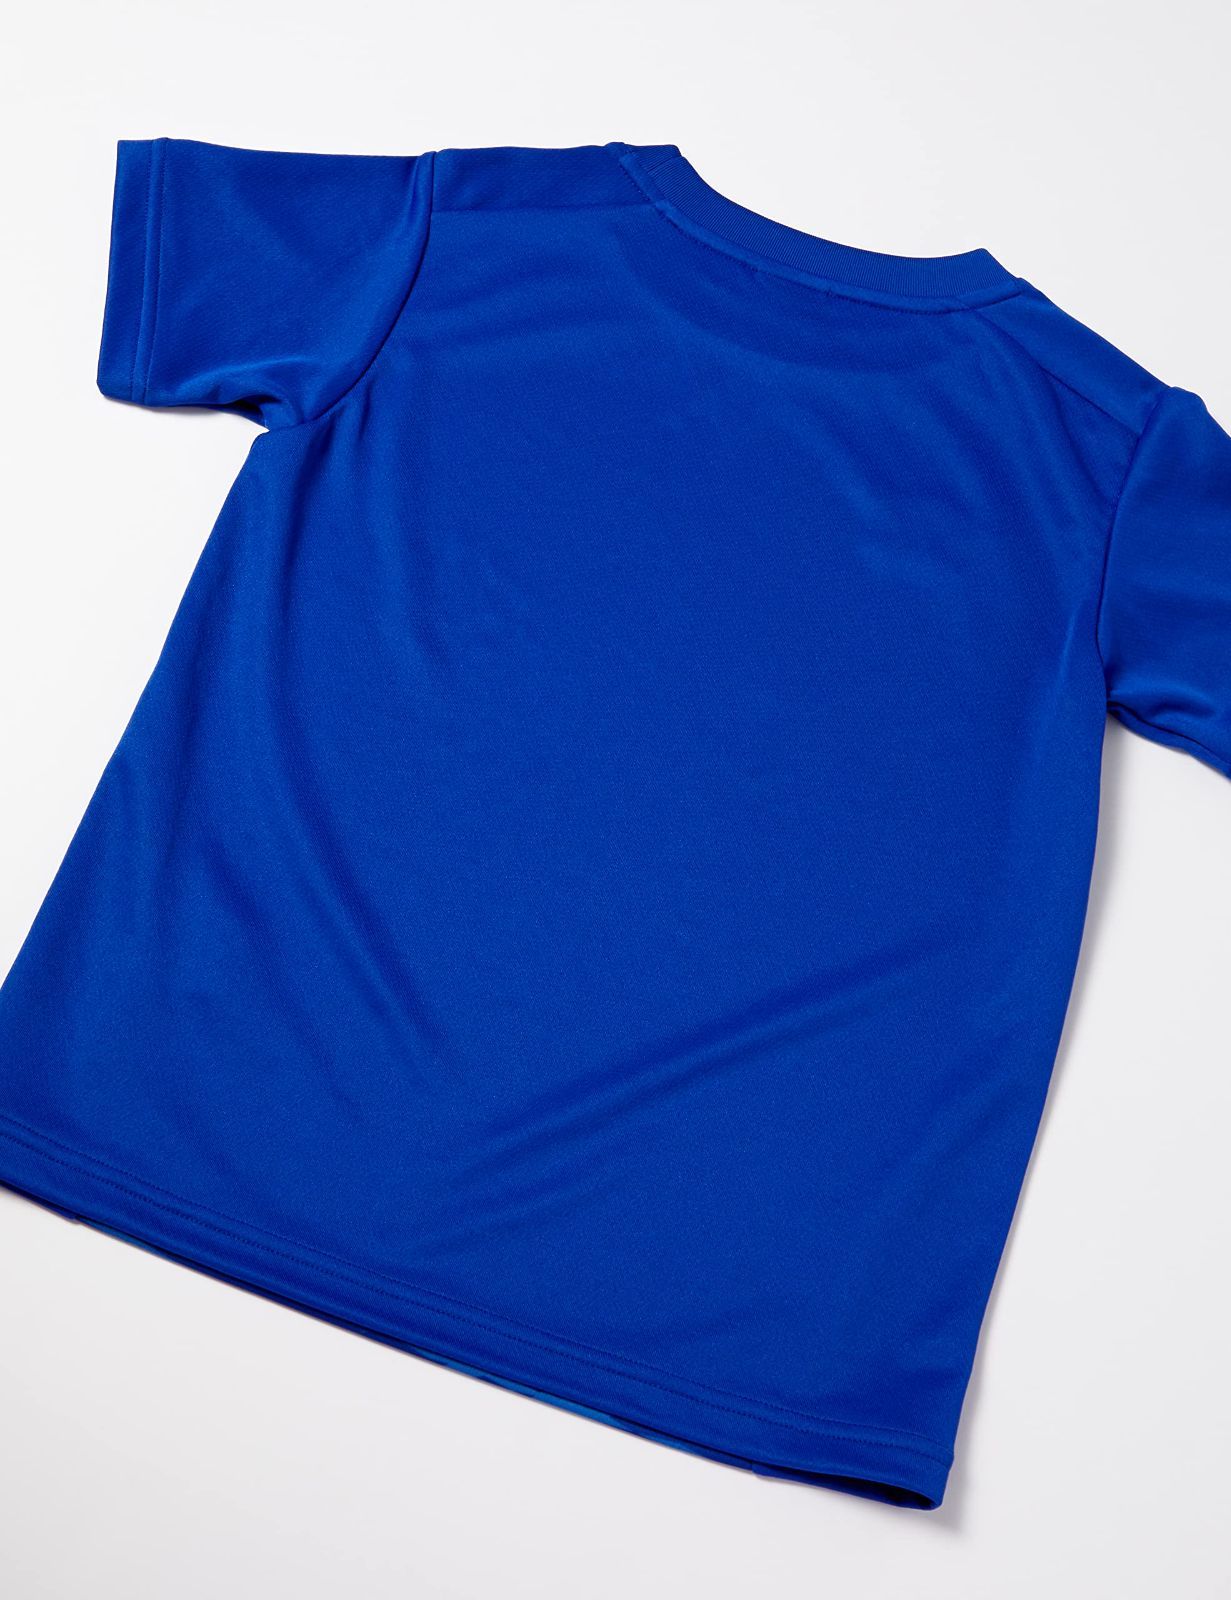 [アンブロ] Tシャツ サッカー 半袖 定番 吸汗速乾 ドライ ストレッチ 部活